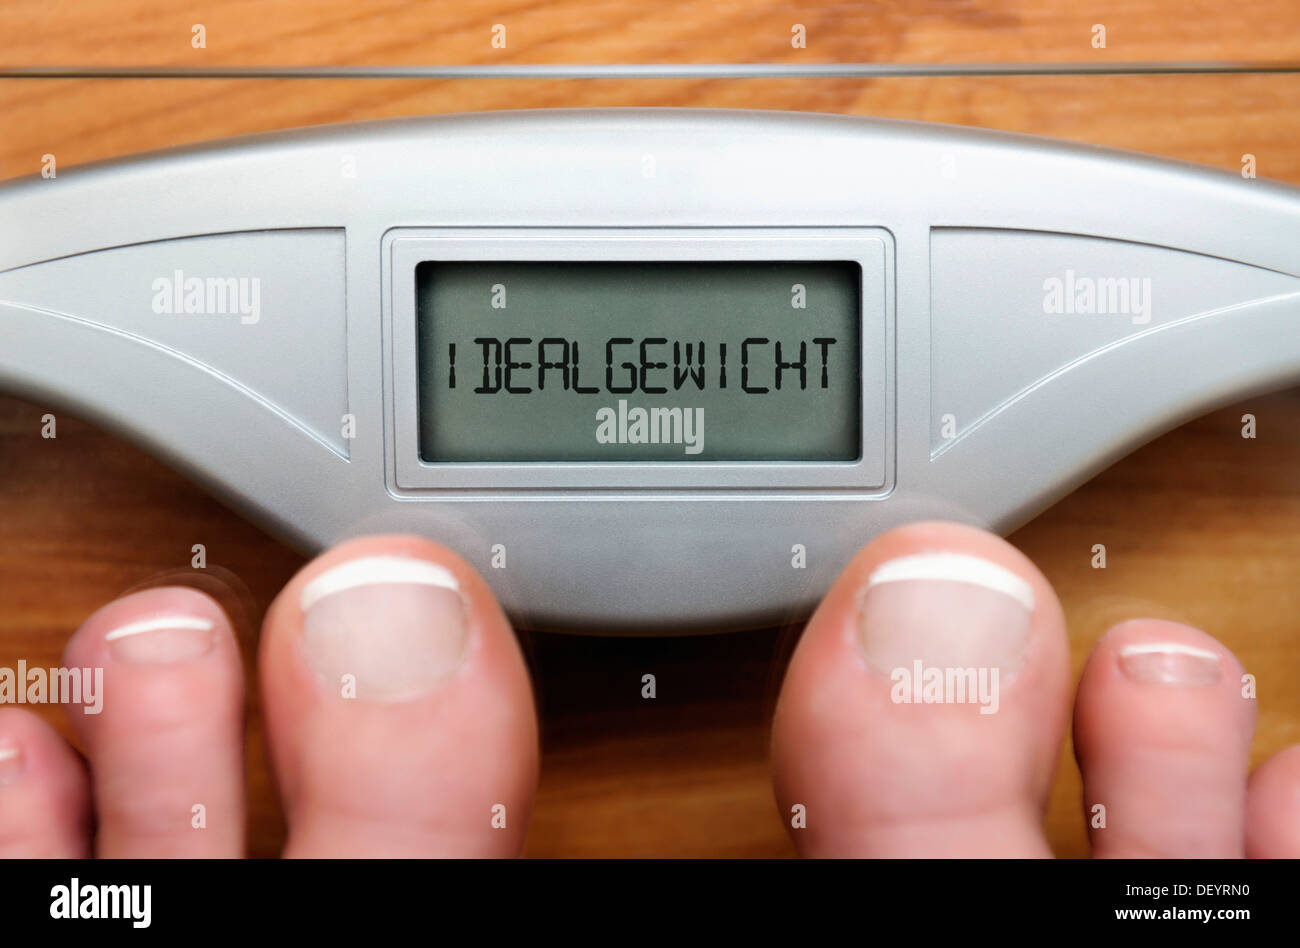 Füße auf Waagen mit Digitalanzeige und der Schriftzug "Idealgewicht", Deutsch für "Idealgewicht" Stockfoto